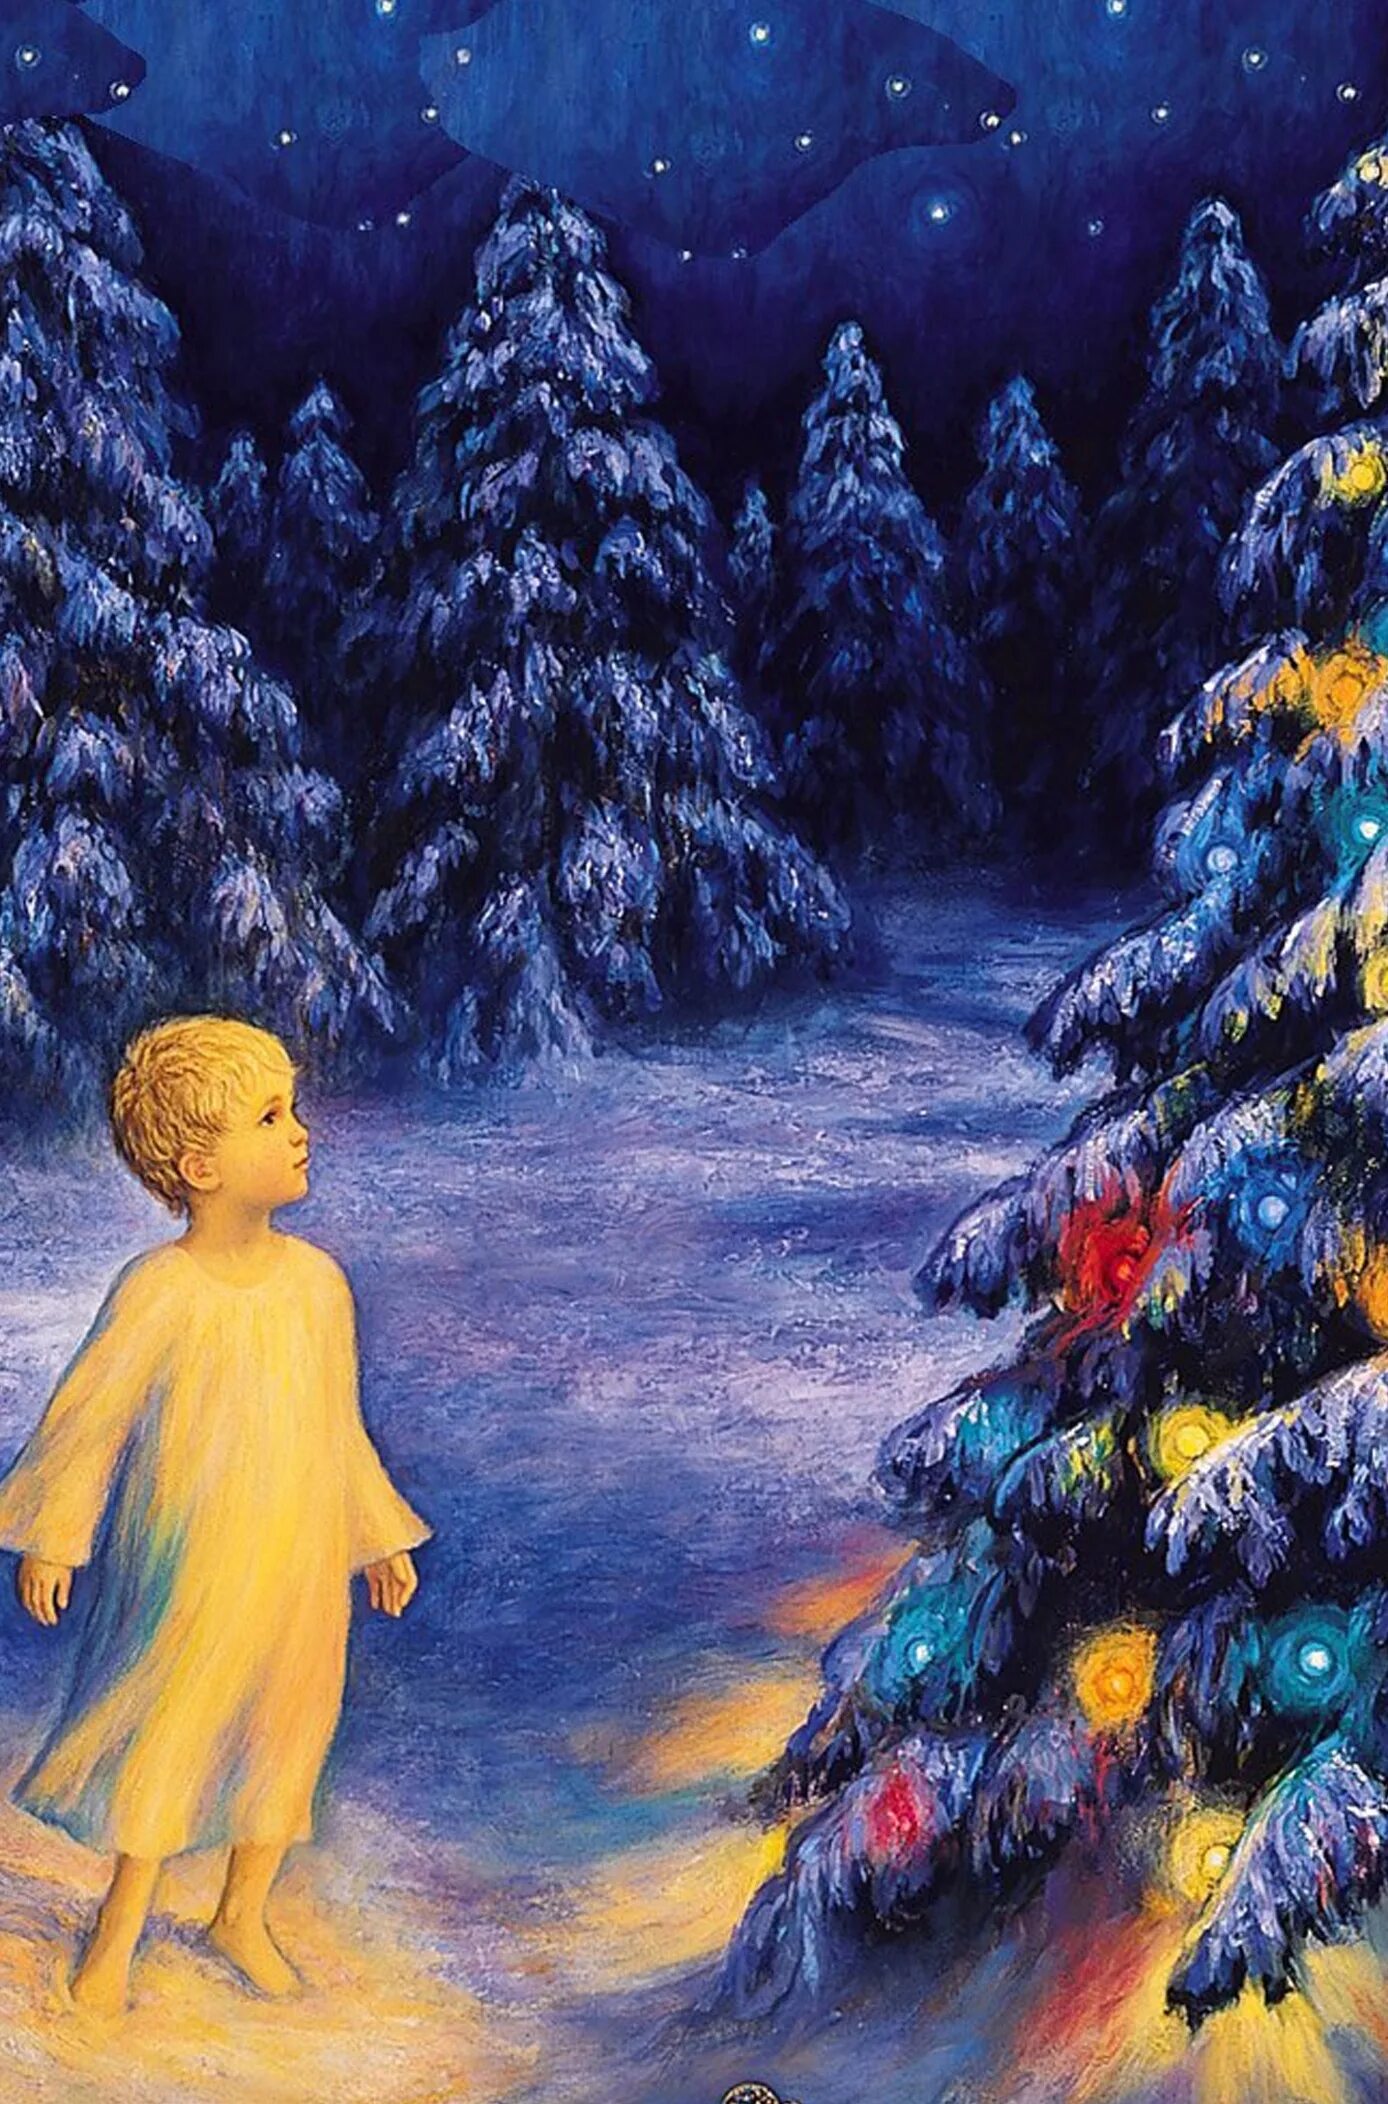 Мальчик у христа на елке основная мысль. Мальчик у Христа на ёлке иллюстрации. Предание о рождественской елке для детей. Мальчик на Христе у елки.